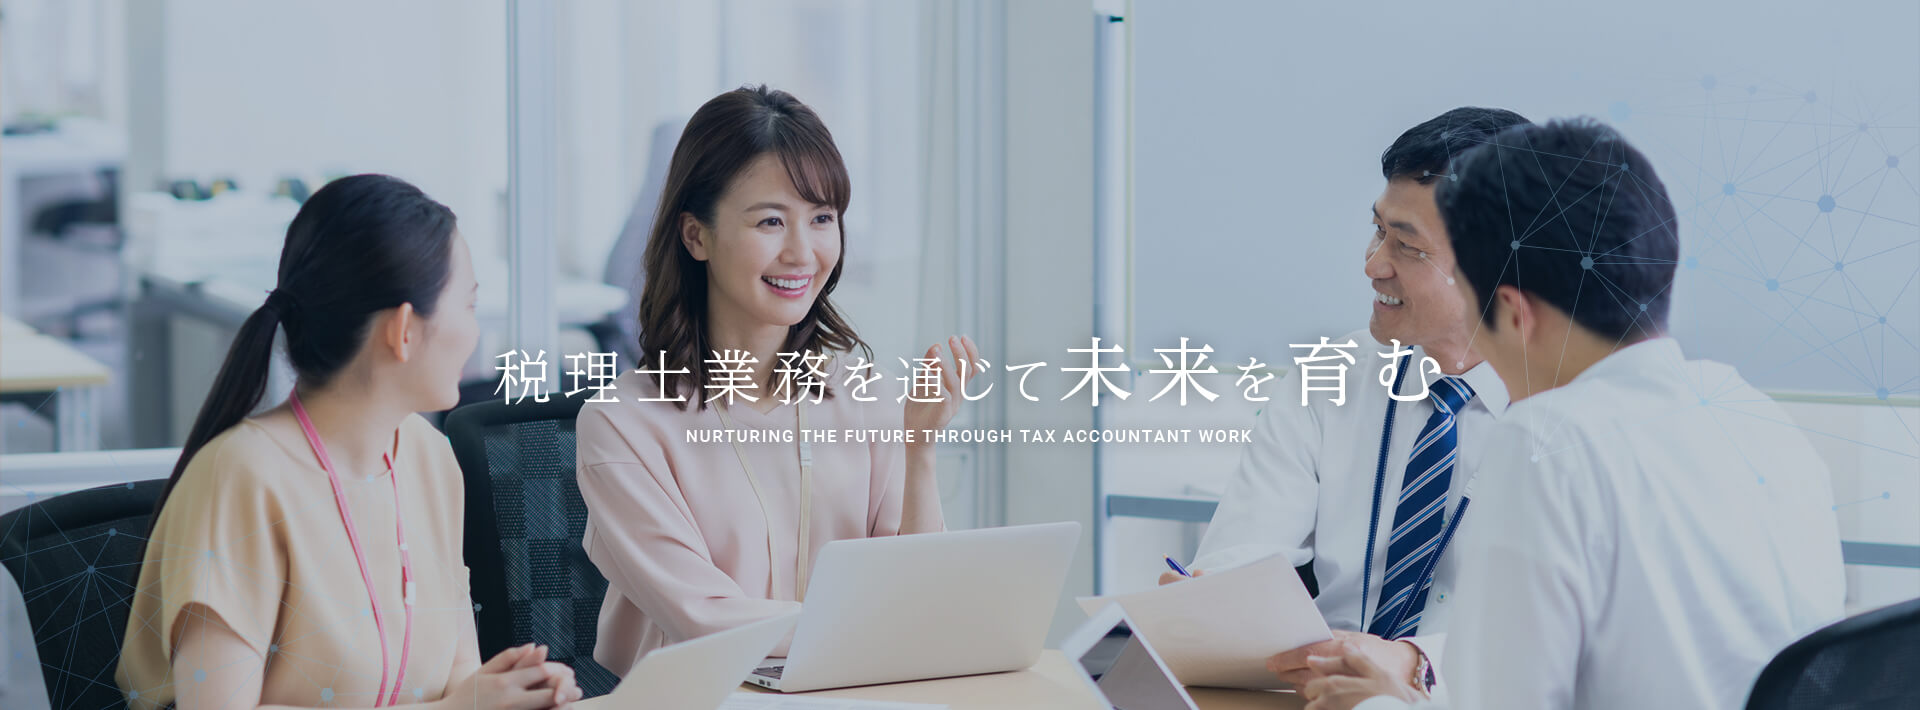 税理士業務を通じて未来を育む